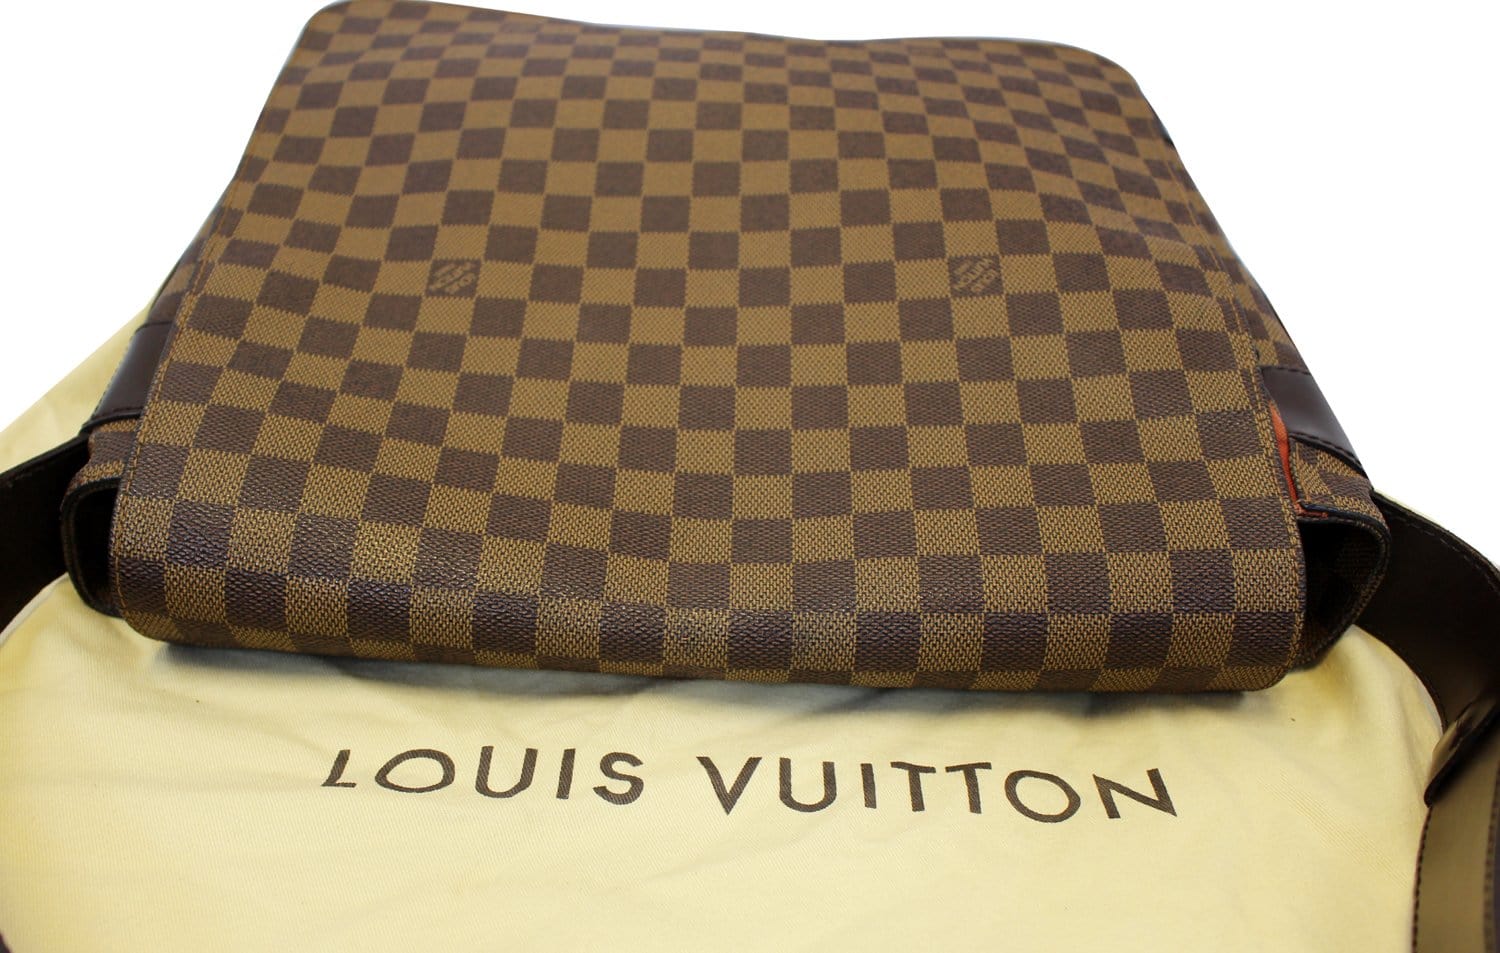 Louis Vuitton Damier Ebene Canvas and Leather Bastille Messenger Bag Louis  Vuitton